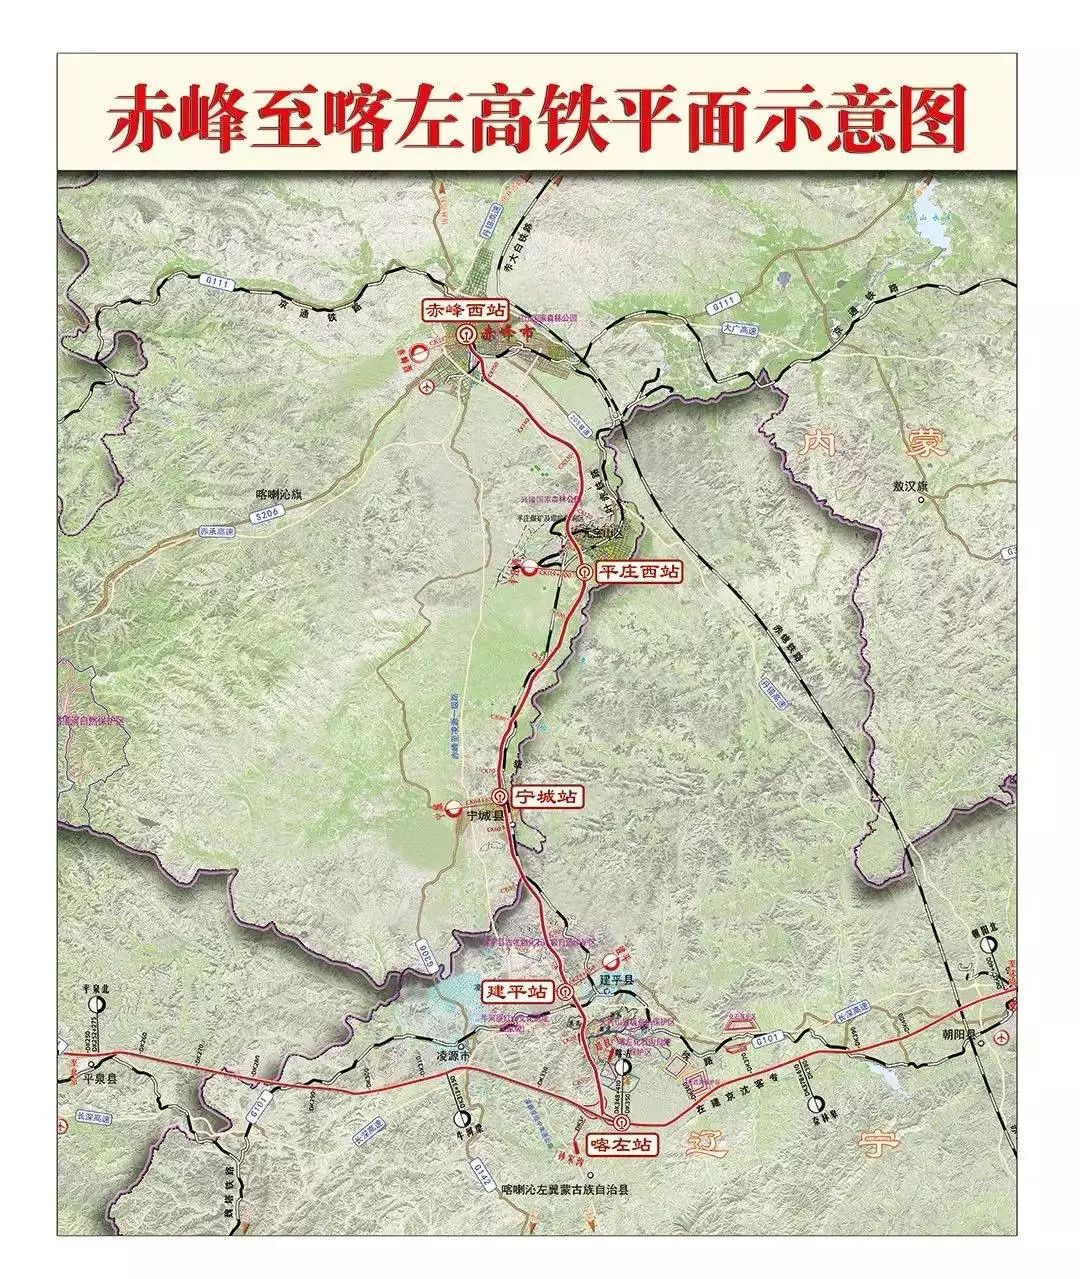 赤峰至京沈高铁喀左站客运专线于2016年7月正式开工,北起赤峰市,向南